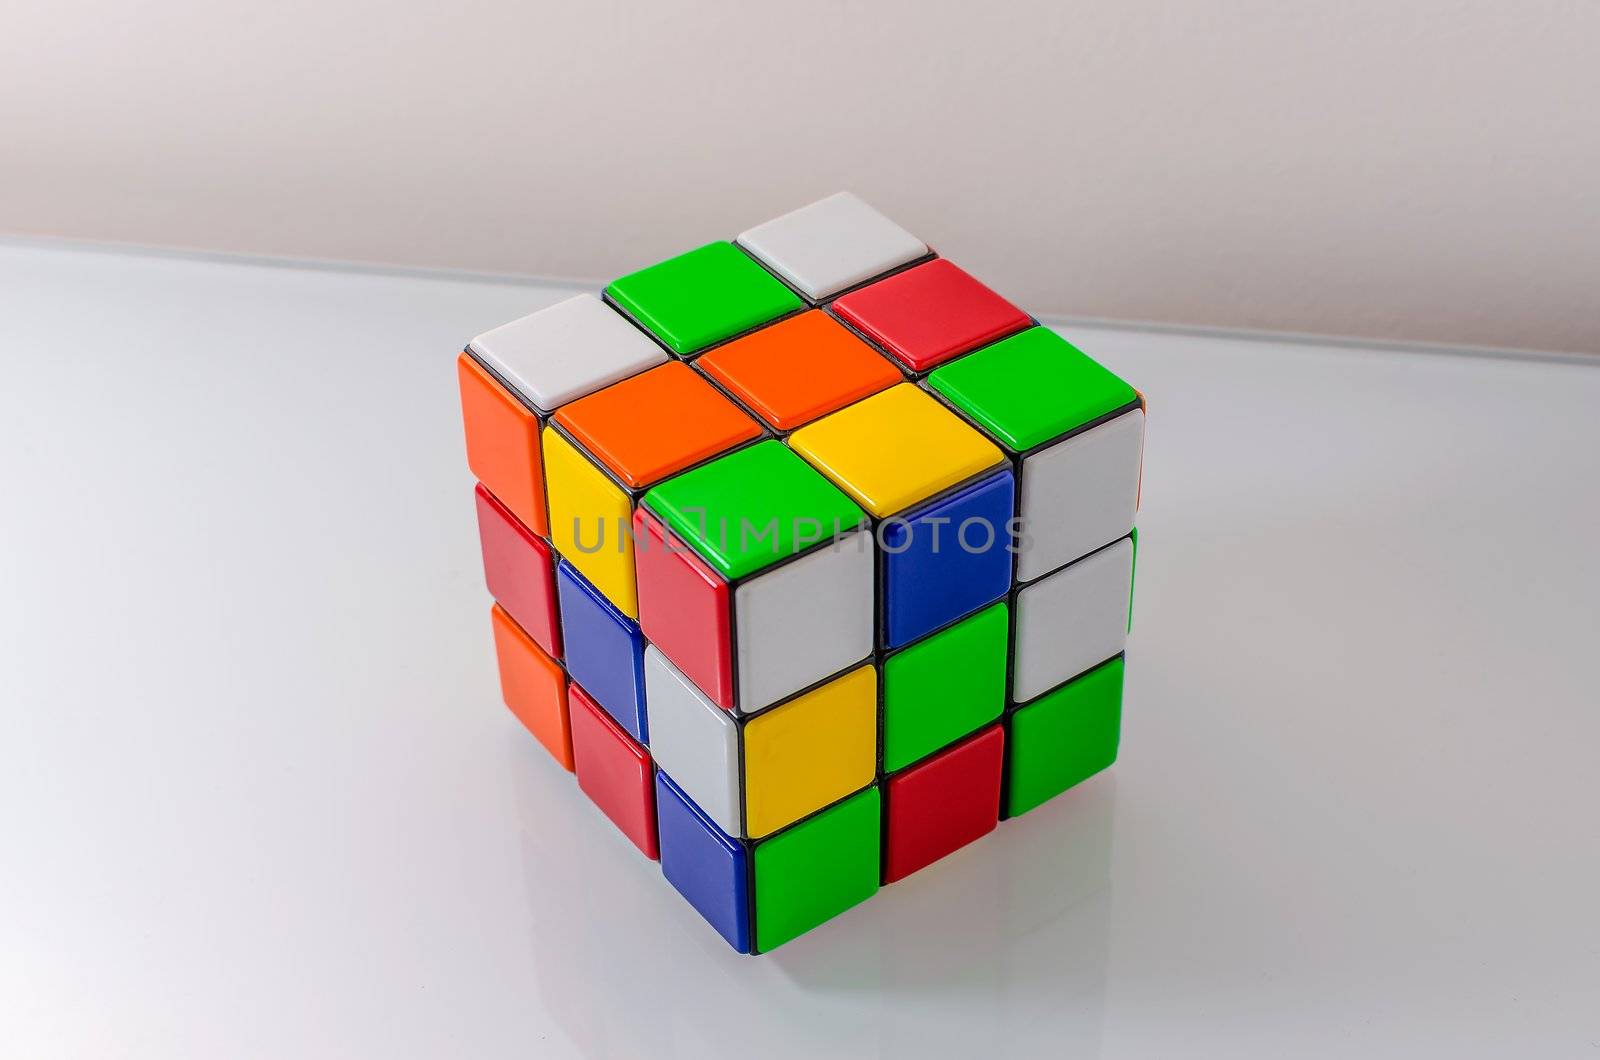 Unsolved Rubiks Cube by marcorubino